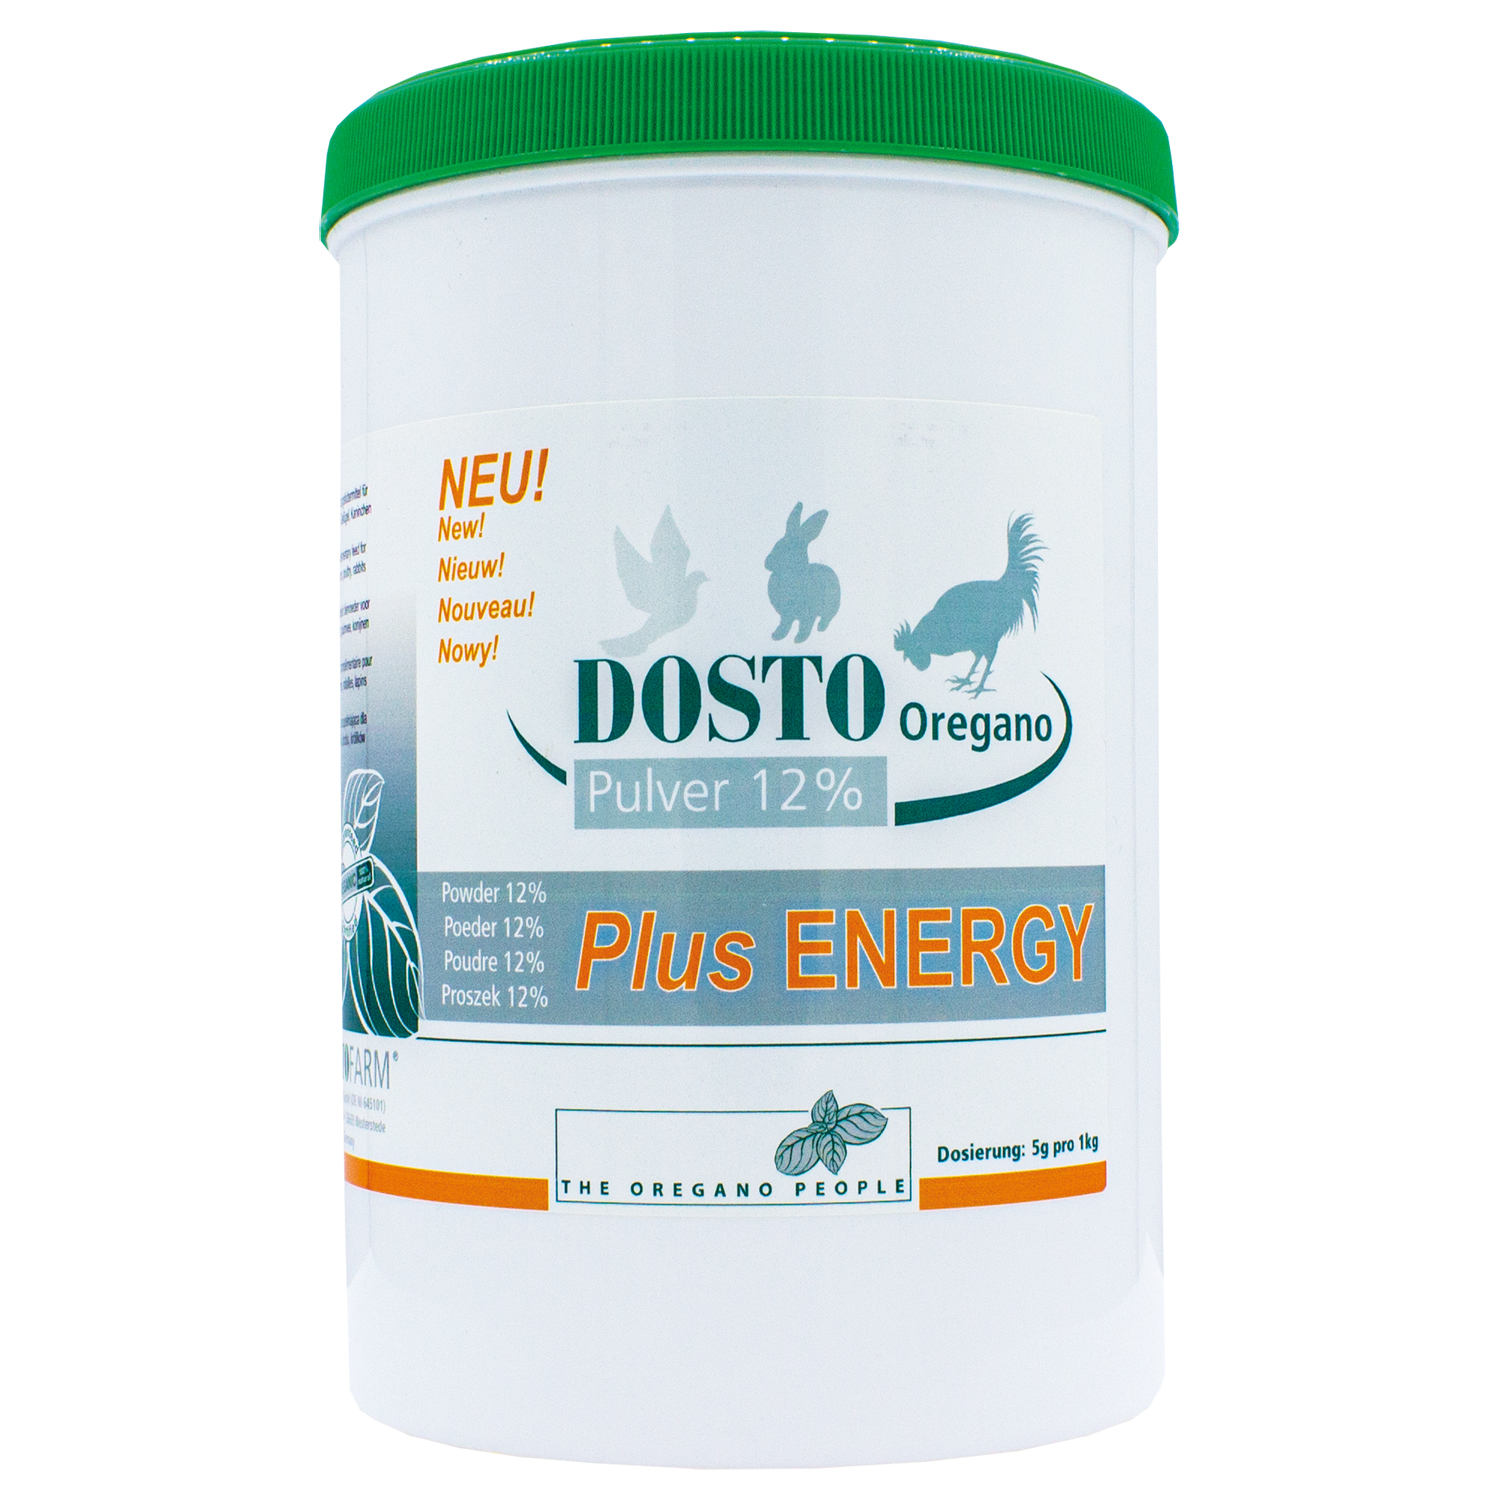 Dosto Oregano Pulver 12% + Plus ENERGY 500 g